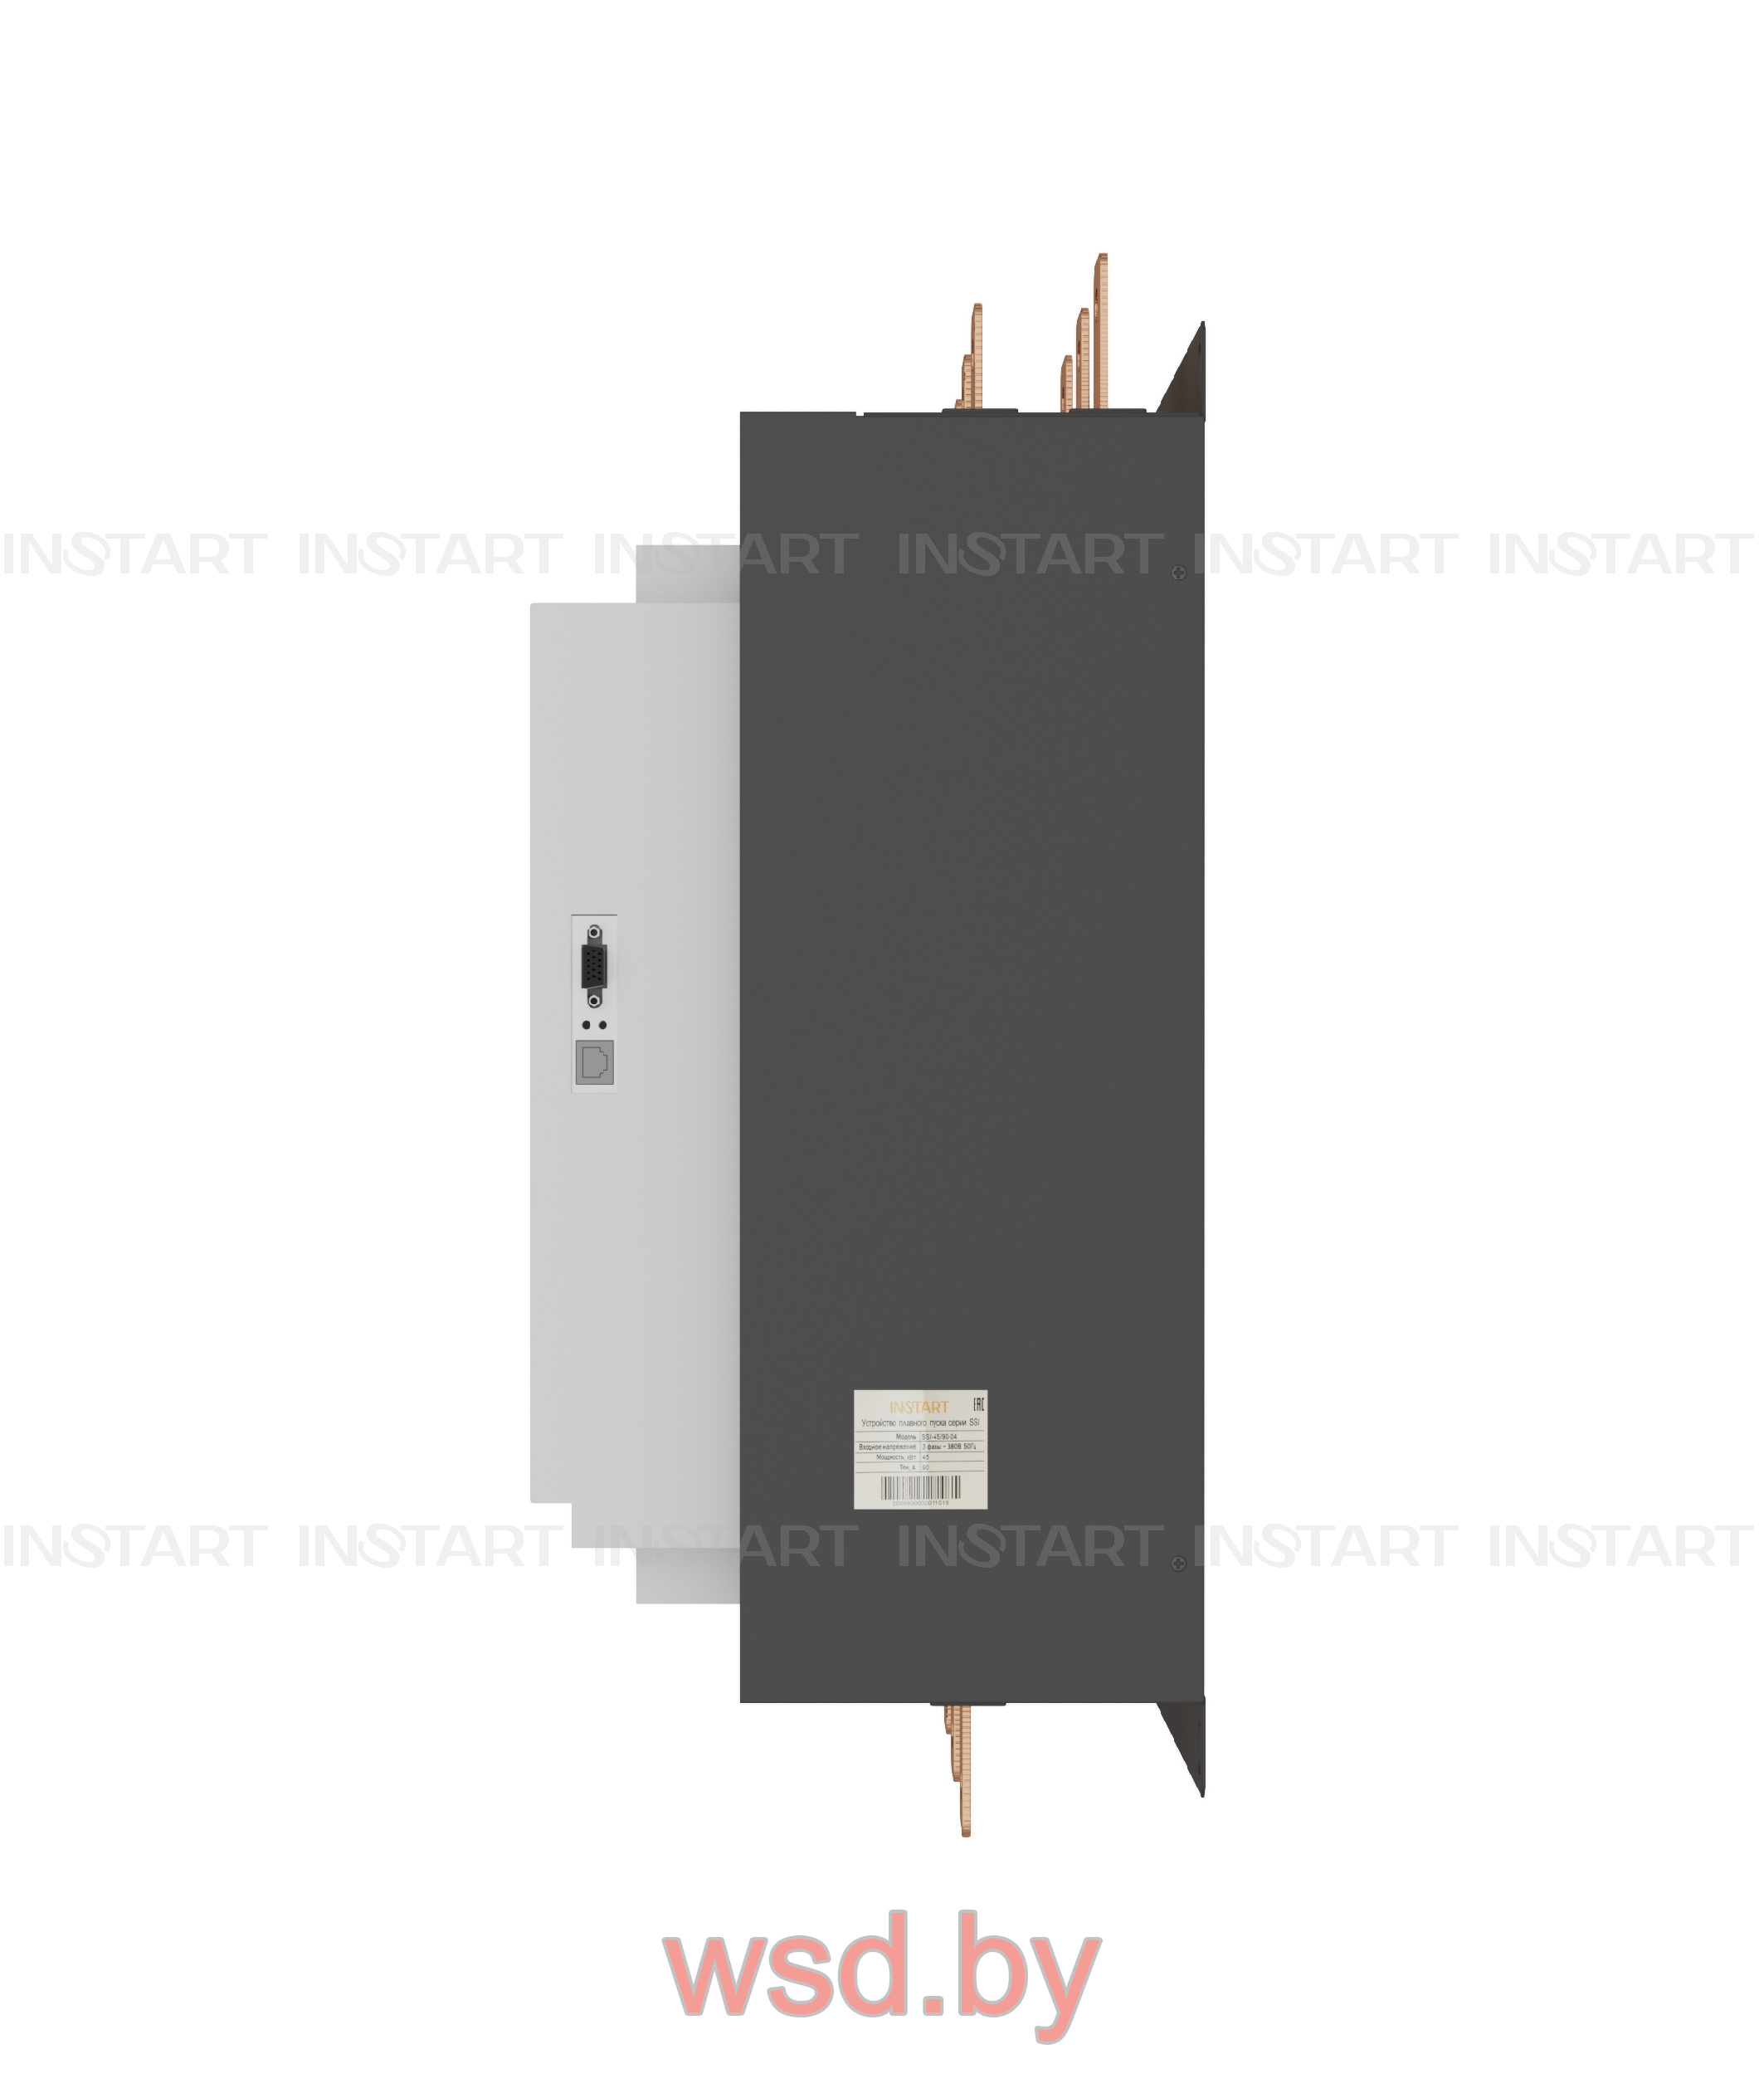 Устройство плавного пуска INSTART SSI-450/900-04 450кВт 900А 3 ~ 380В ± 15% 50/60Гц. Фото N2